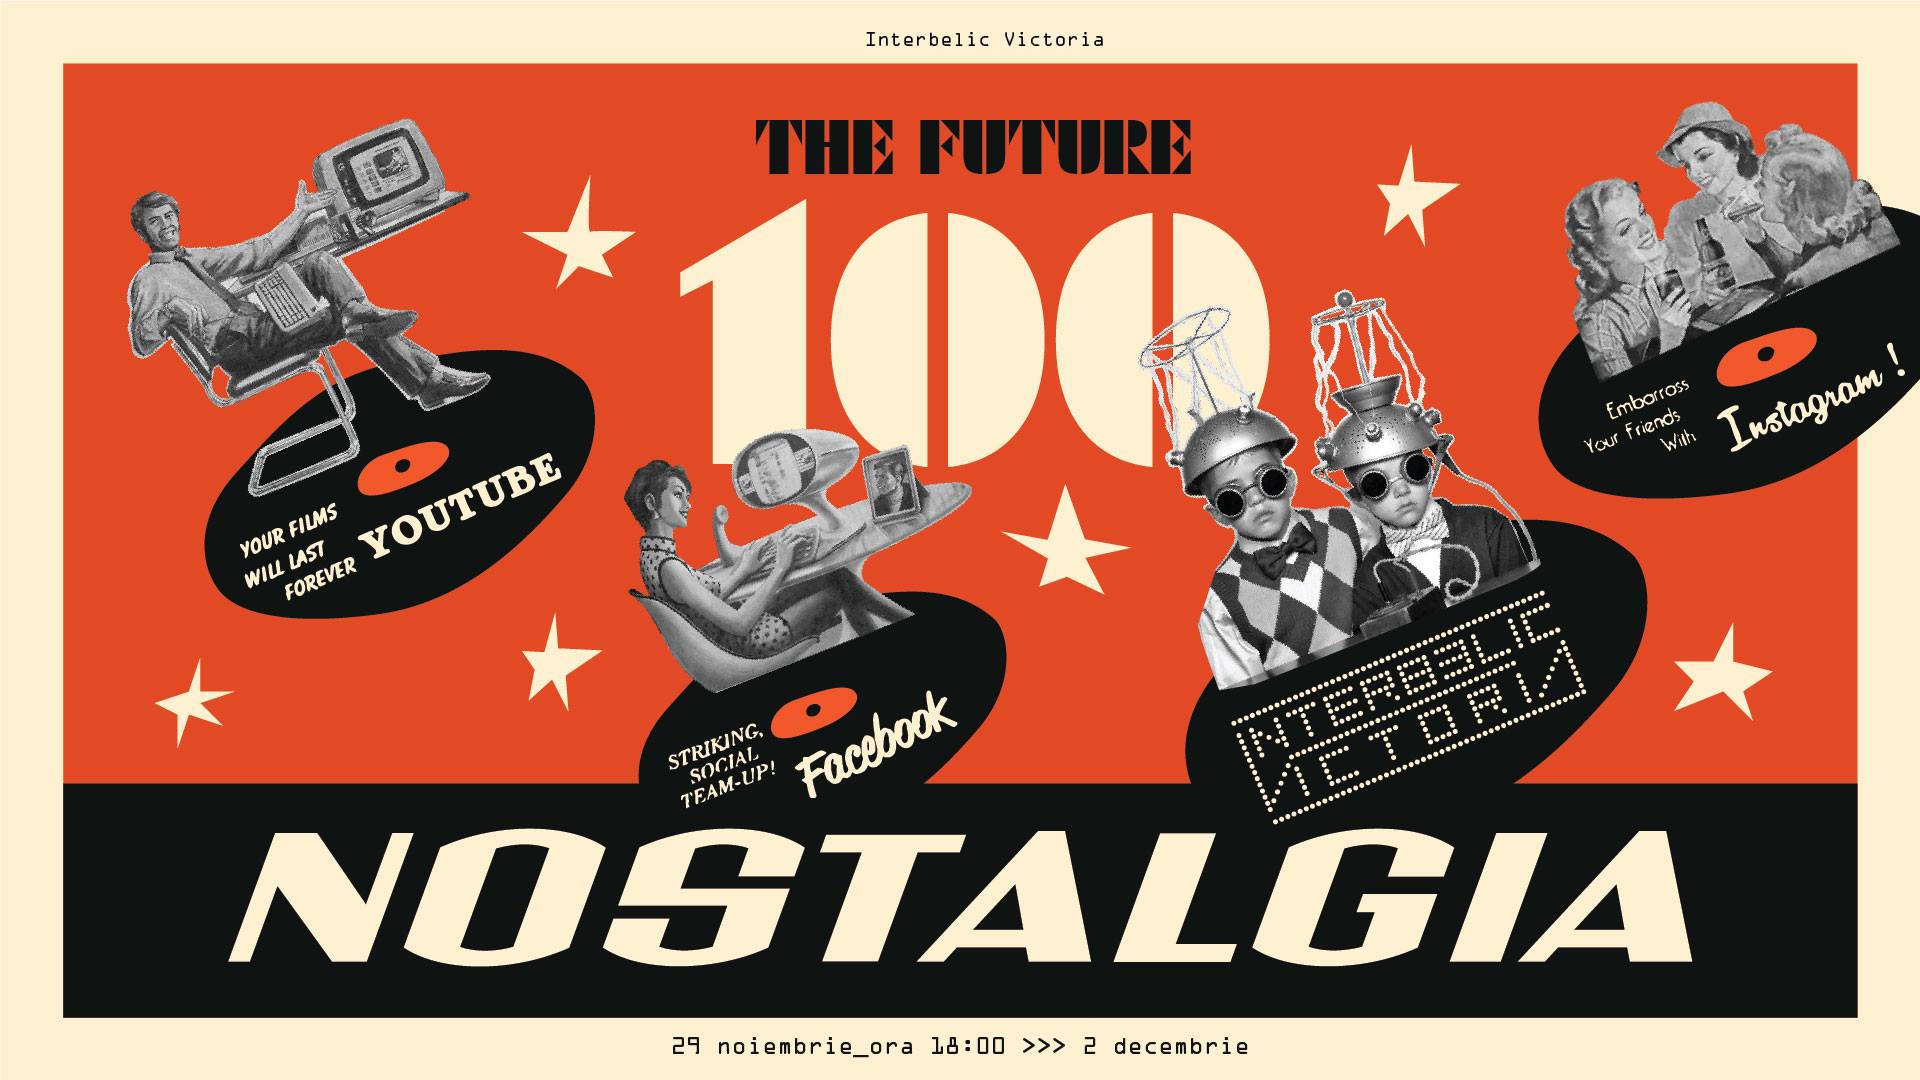 Nostalgia 100 by Interbelic